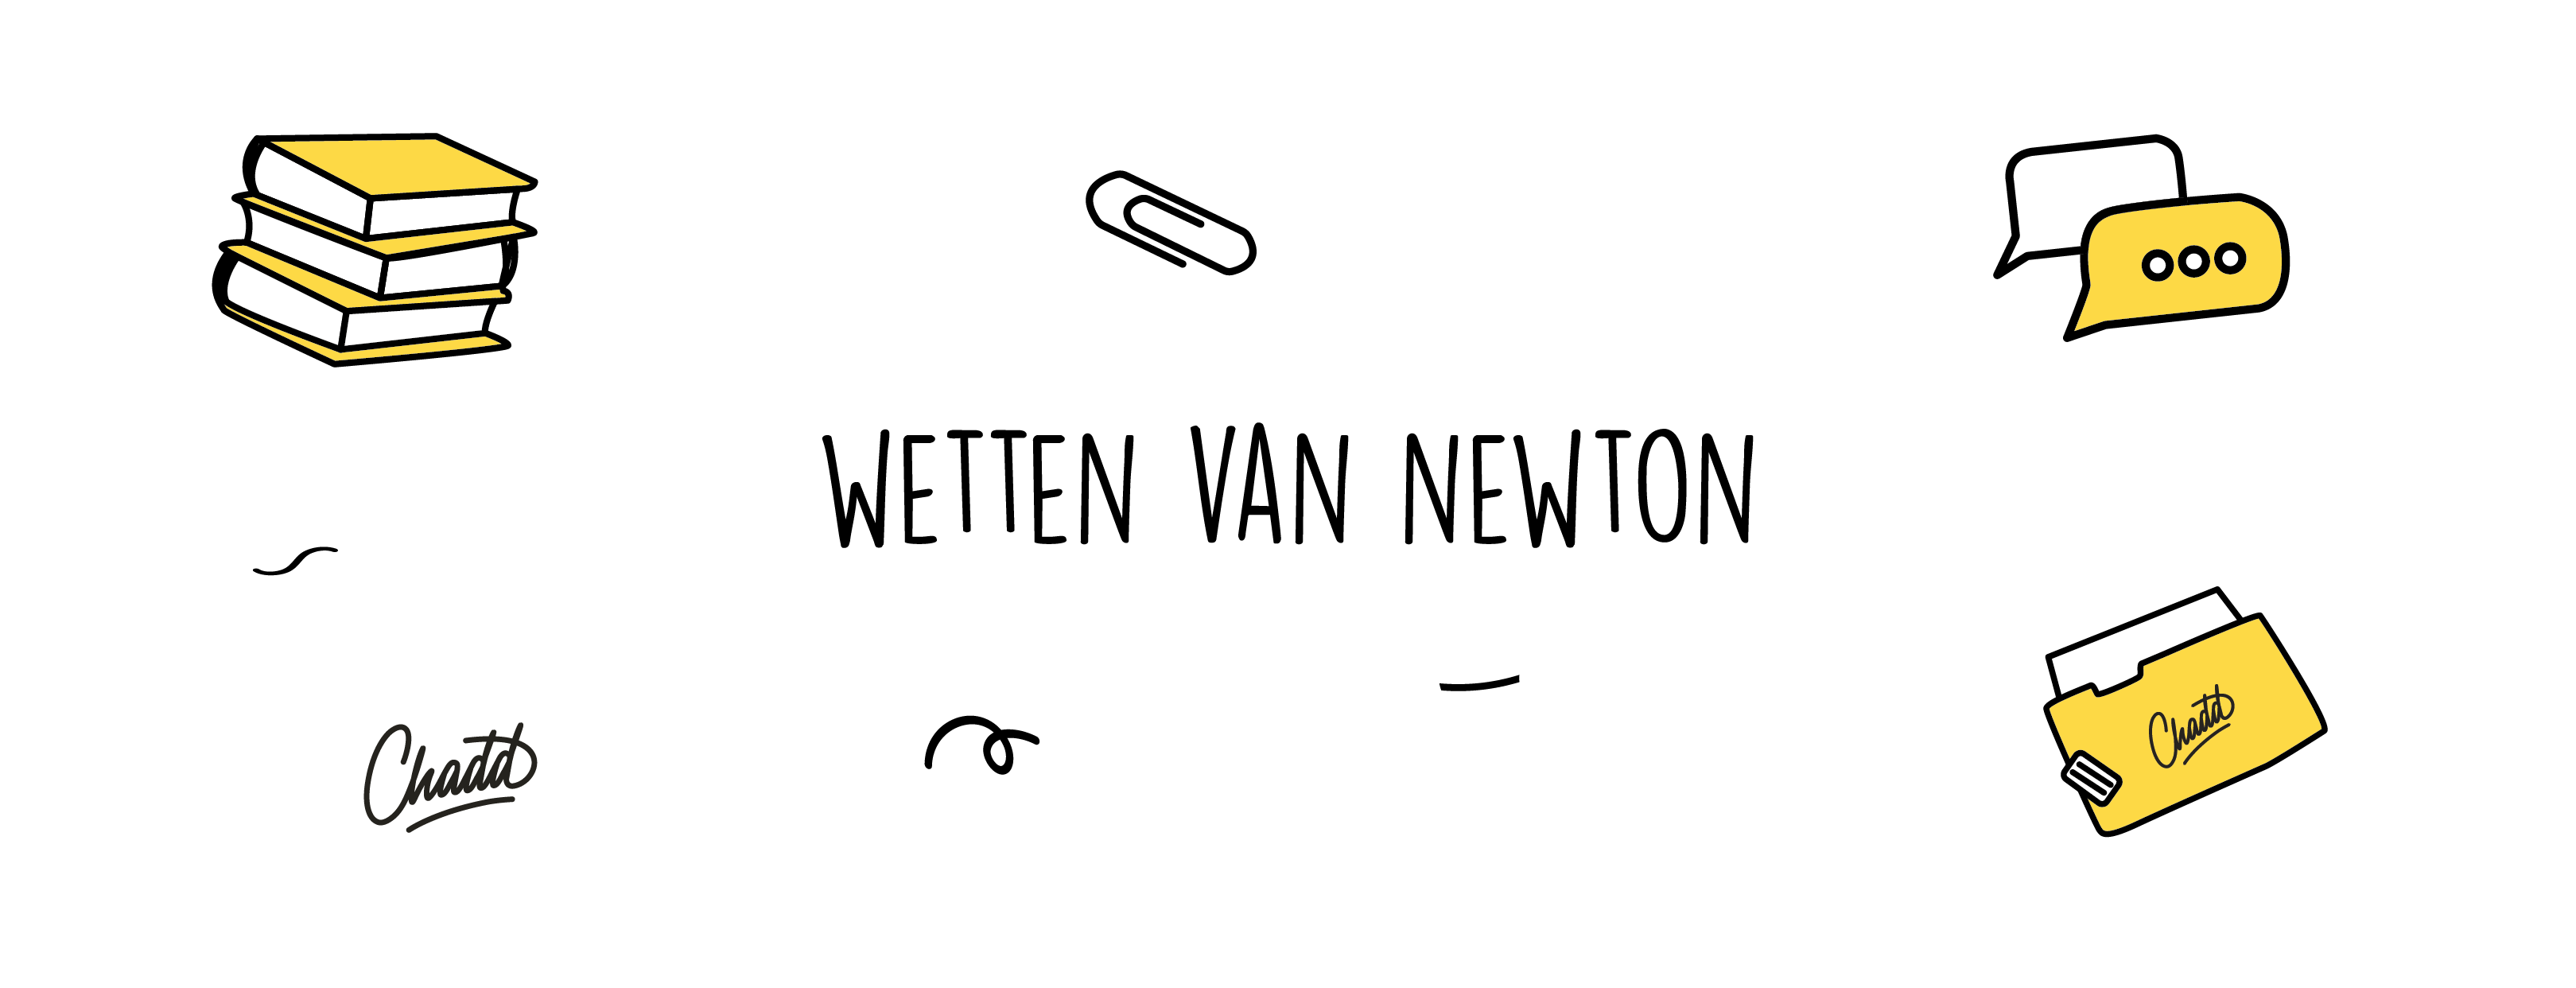 wetten van newton